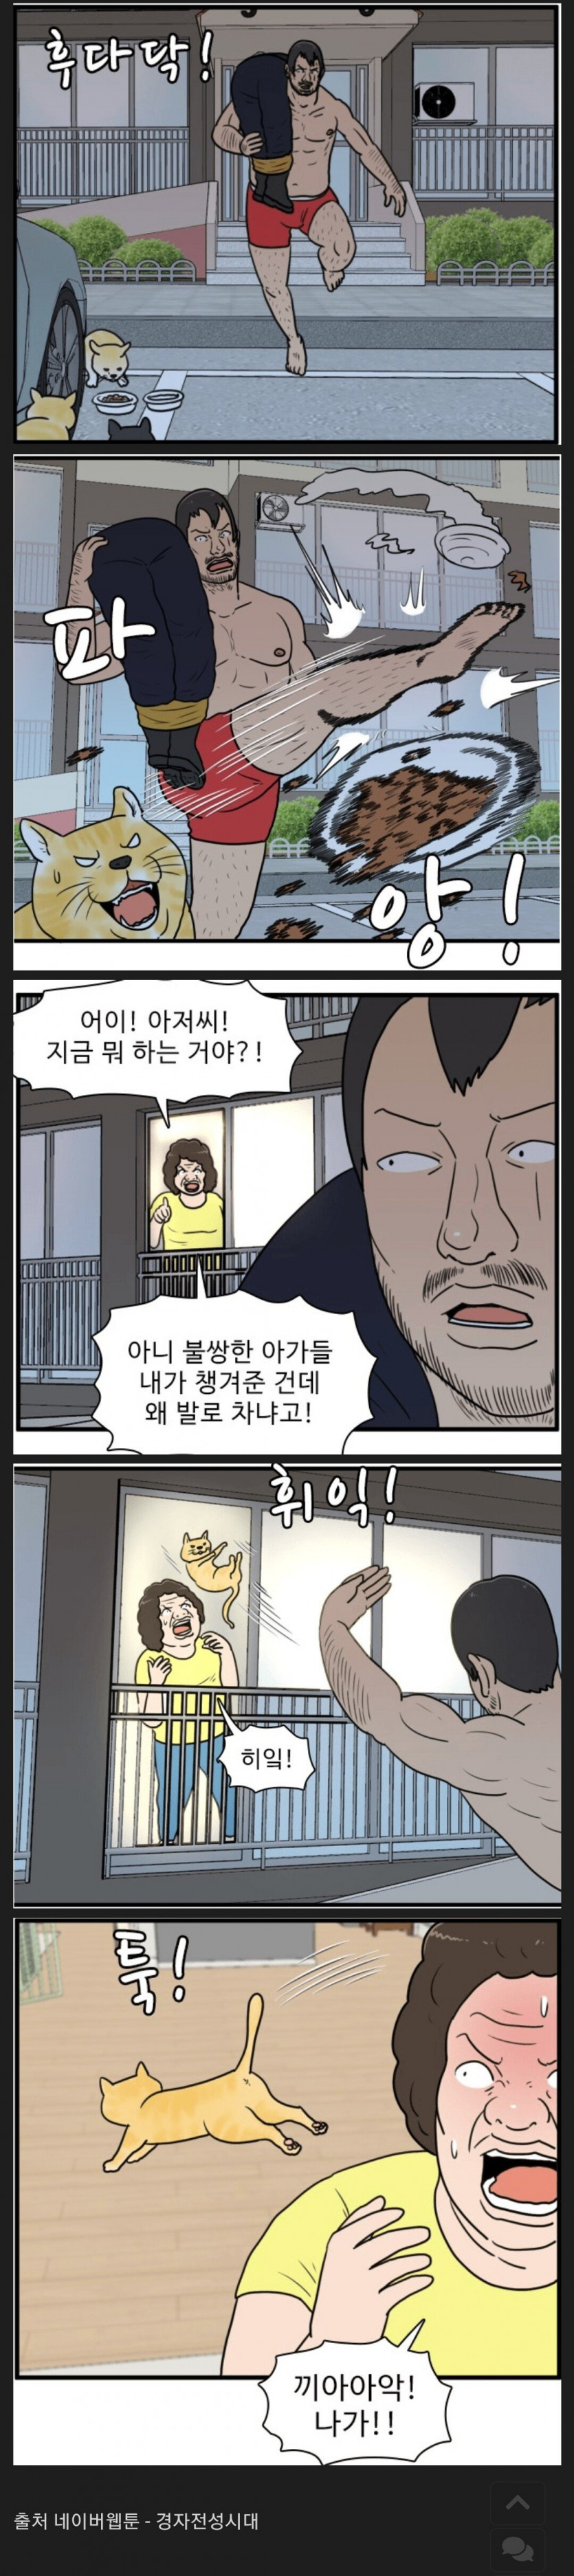 캣맘카페 영구차단 웹툰 (feat.)네이버웹툰(0)